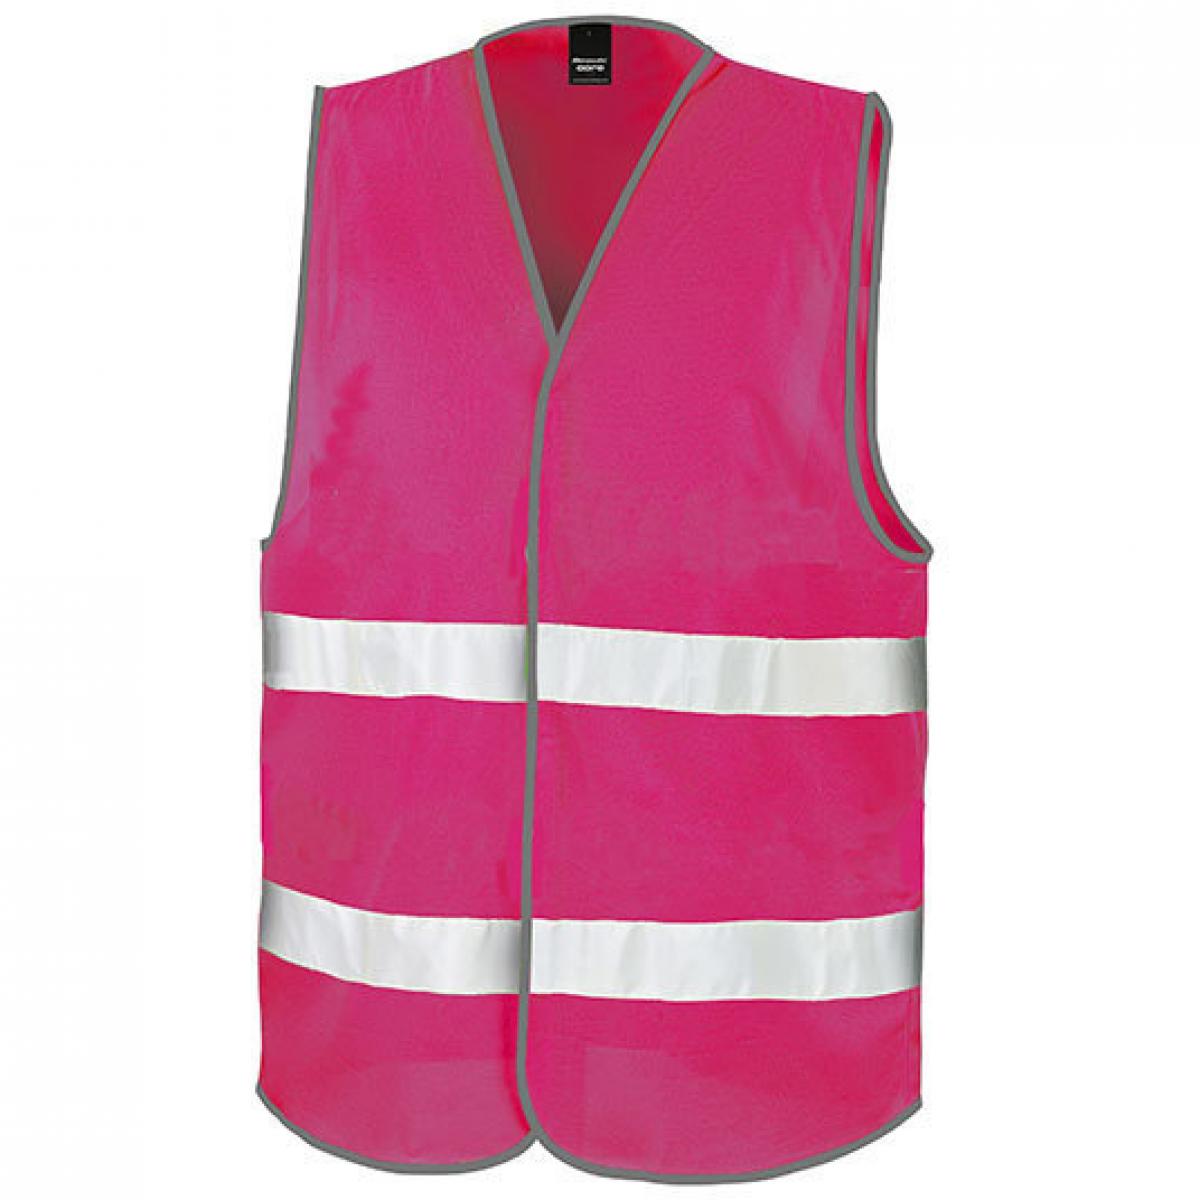 Hersteller: Result Core Herstellernummer: R200X Artikelbezeichnung: Motorist Safety Vest / ISOEN20471:2013, Klasse 2 Farbe: Raspberry